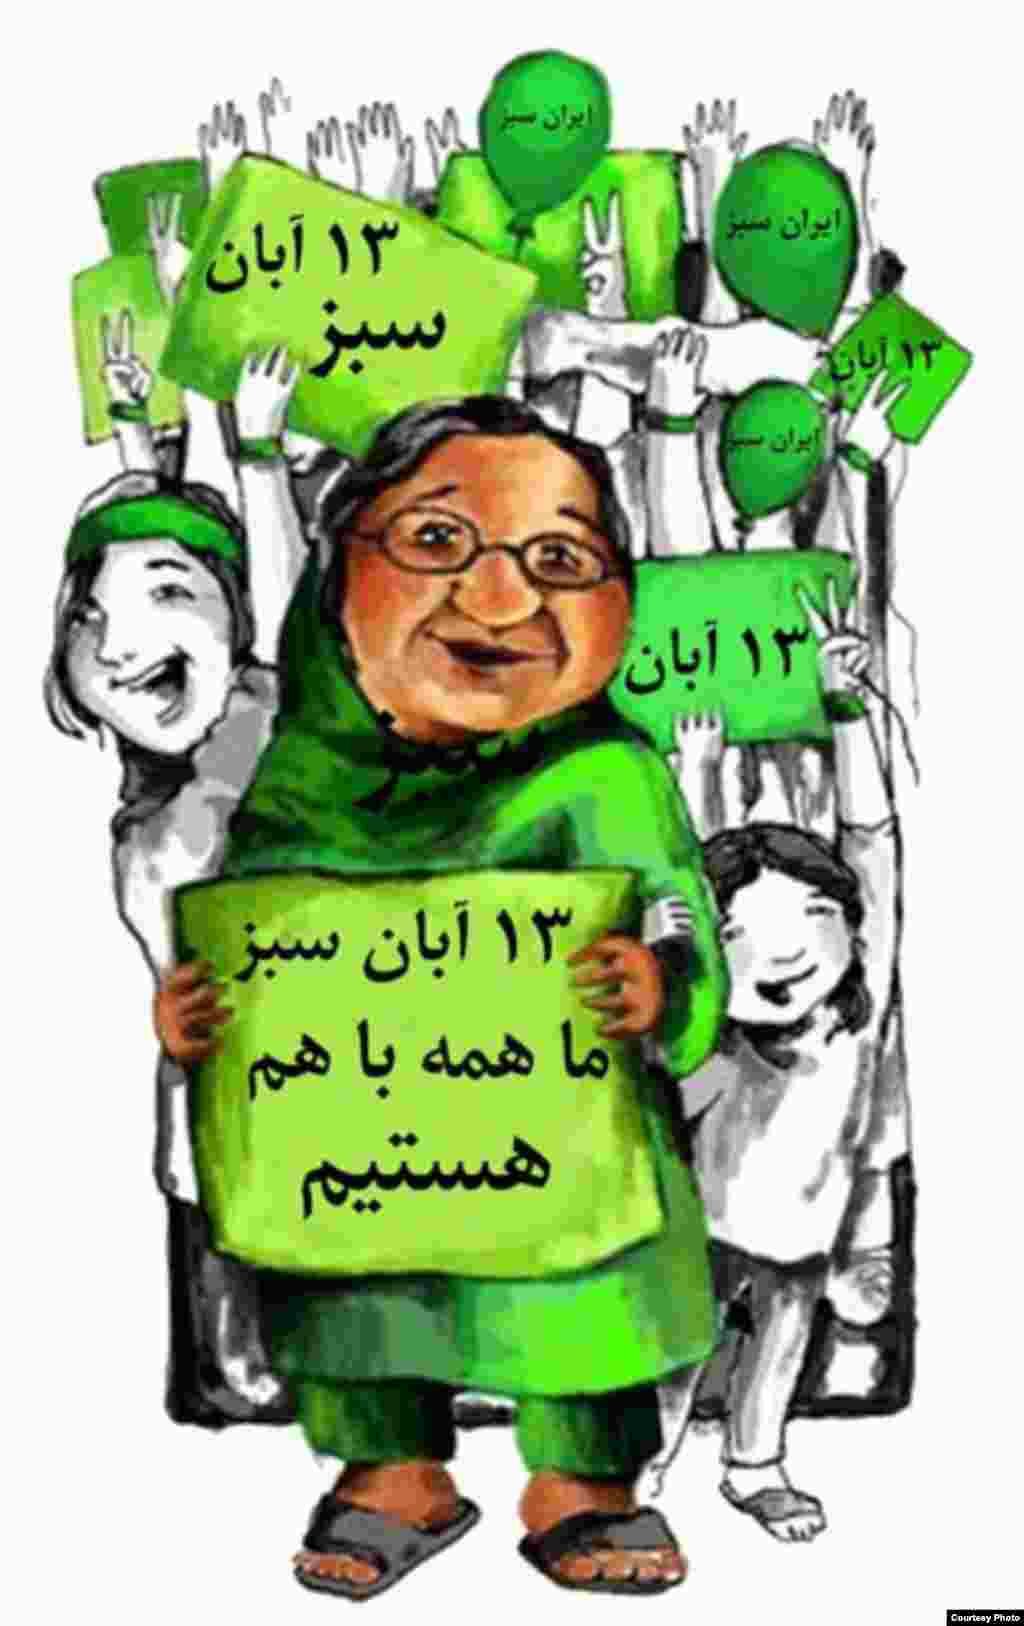 میرحسین موسوی، از رهبران جنبش سبز ایران، 13 آبان را سبزترین روز سال خواند، روزی که به گفته وی، یاد آور آن است که «مردم رهبران ما هستند». به دنبال این فراخوان هنرمندان همصدا با جنبش سبز دست به طراحی پوسترهایی برای این «سبزترین روز سال» زدند.